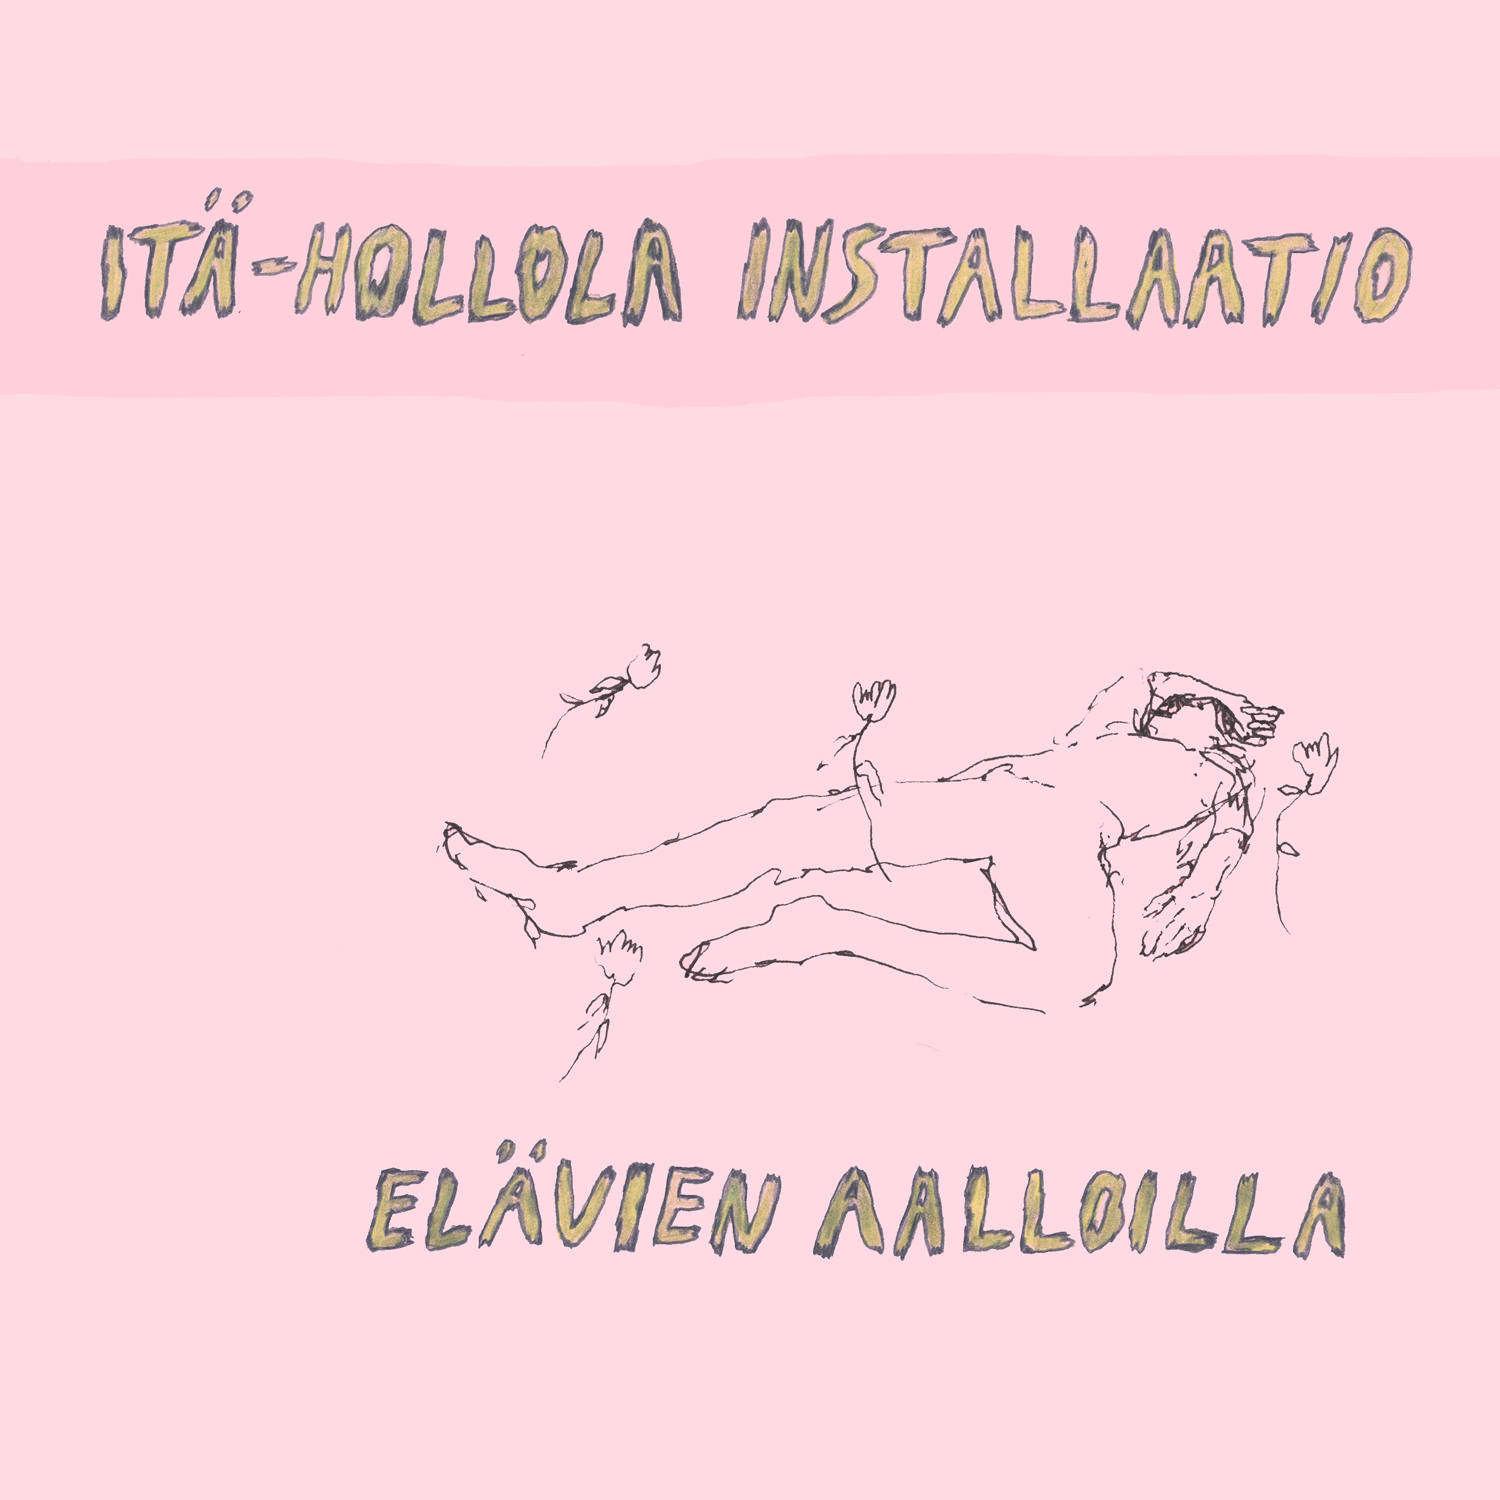 Itä-Hollola Installaation debyyttialbumi rokkaa vinksahtaneesti